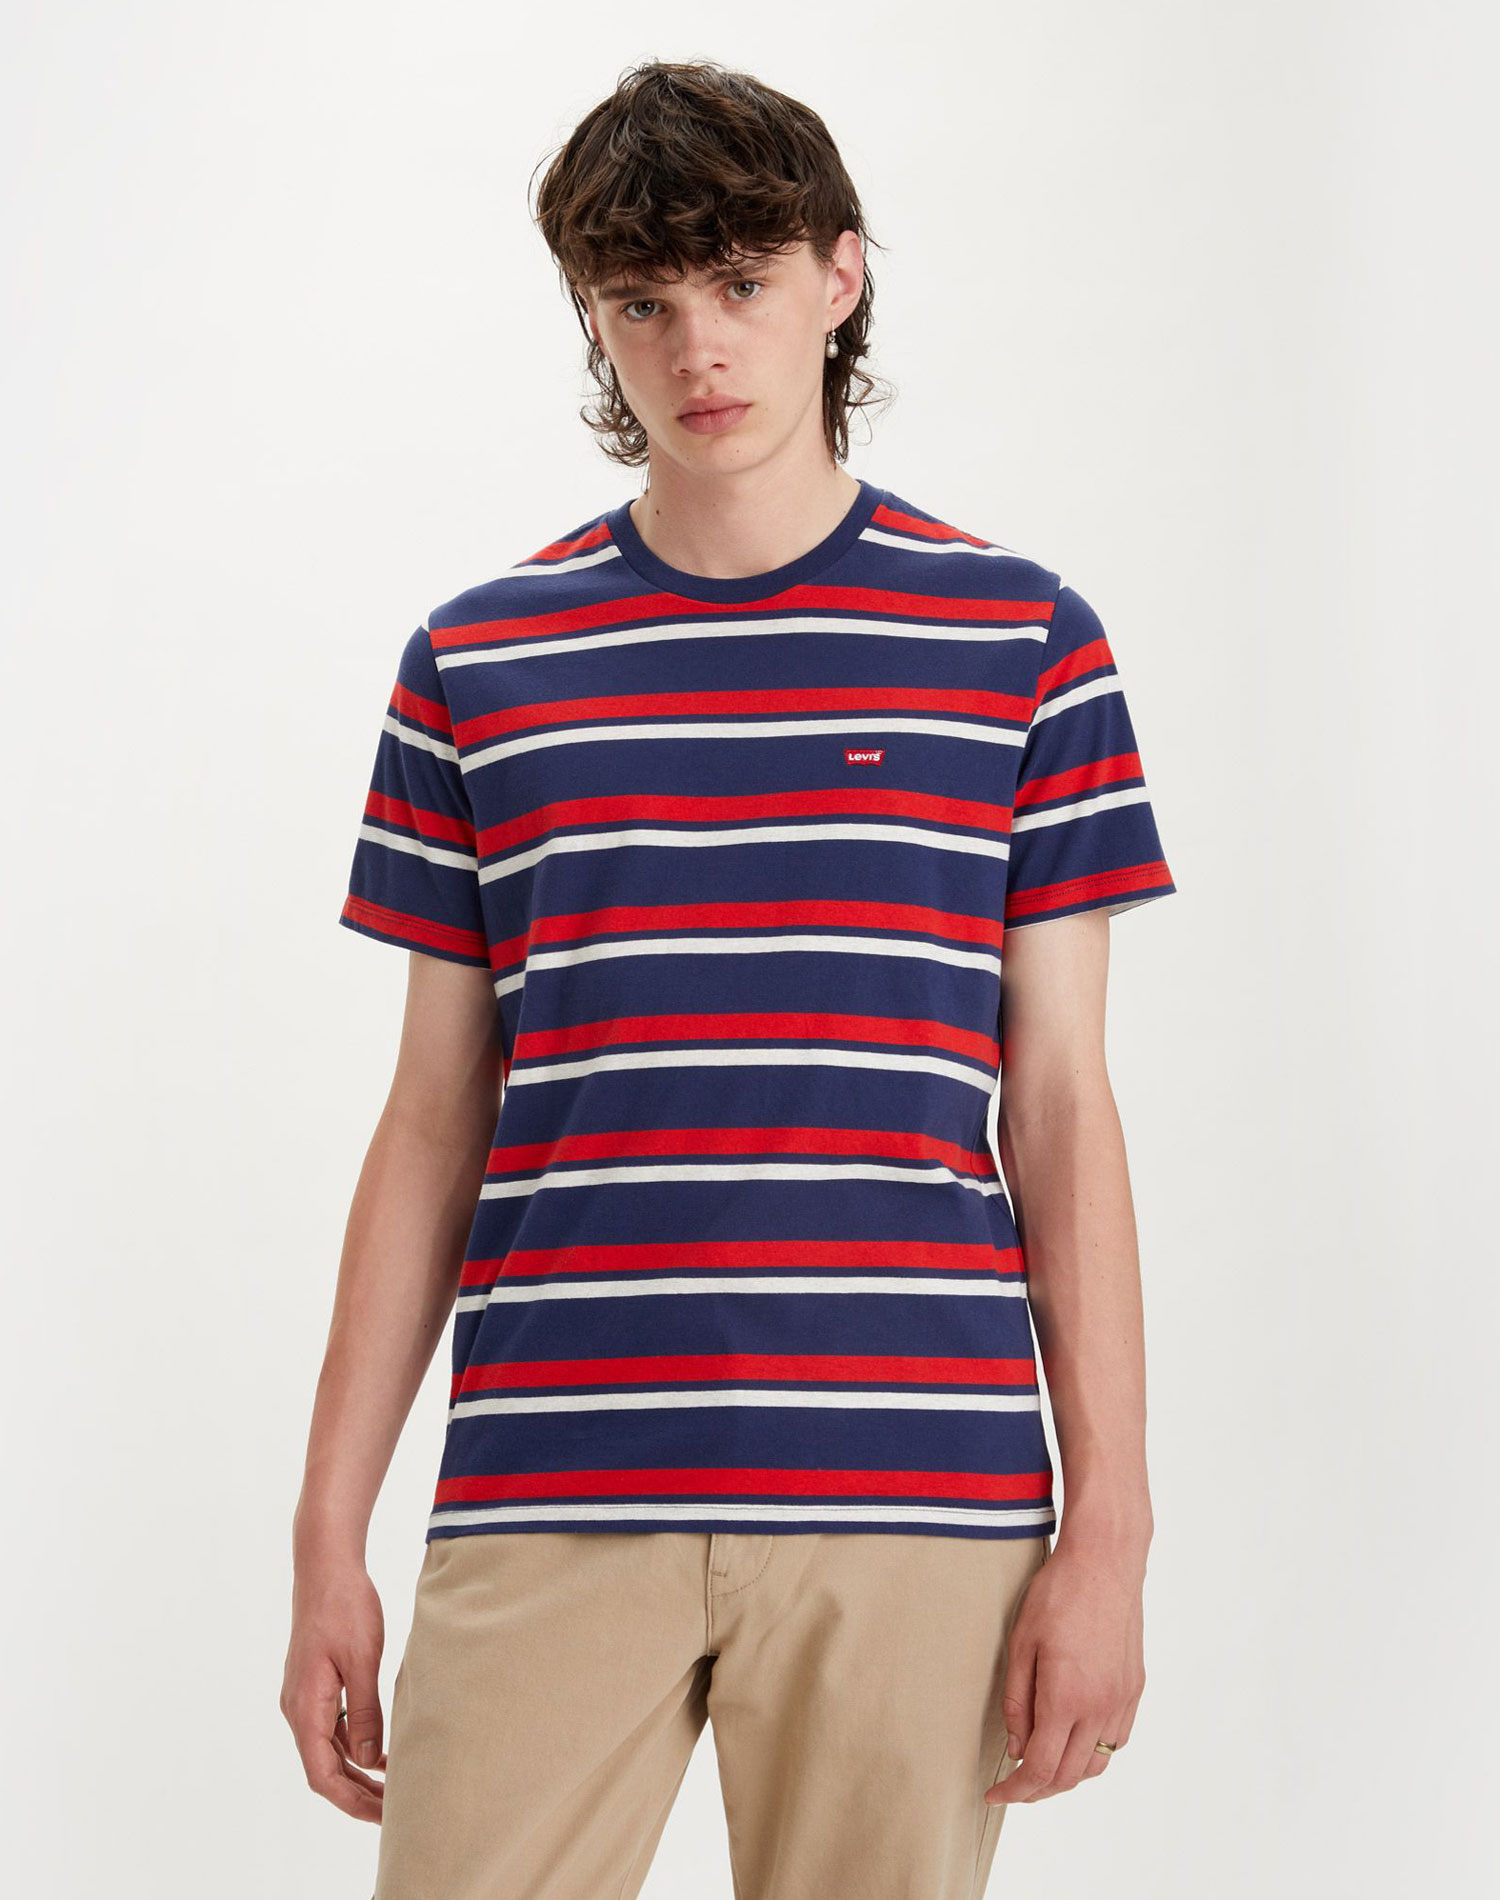 Levi’s® samarreta d'home de m/c 56605-0147 blava amb ratlles blanques i vermelles